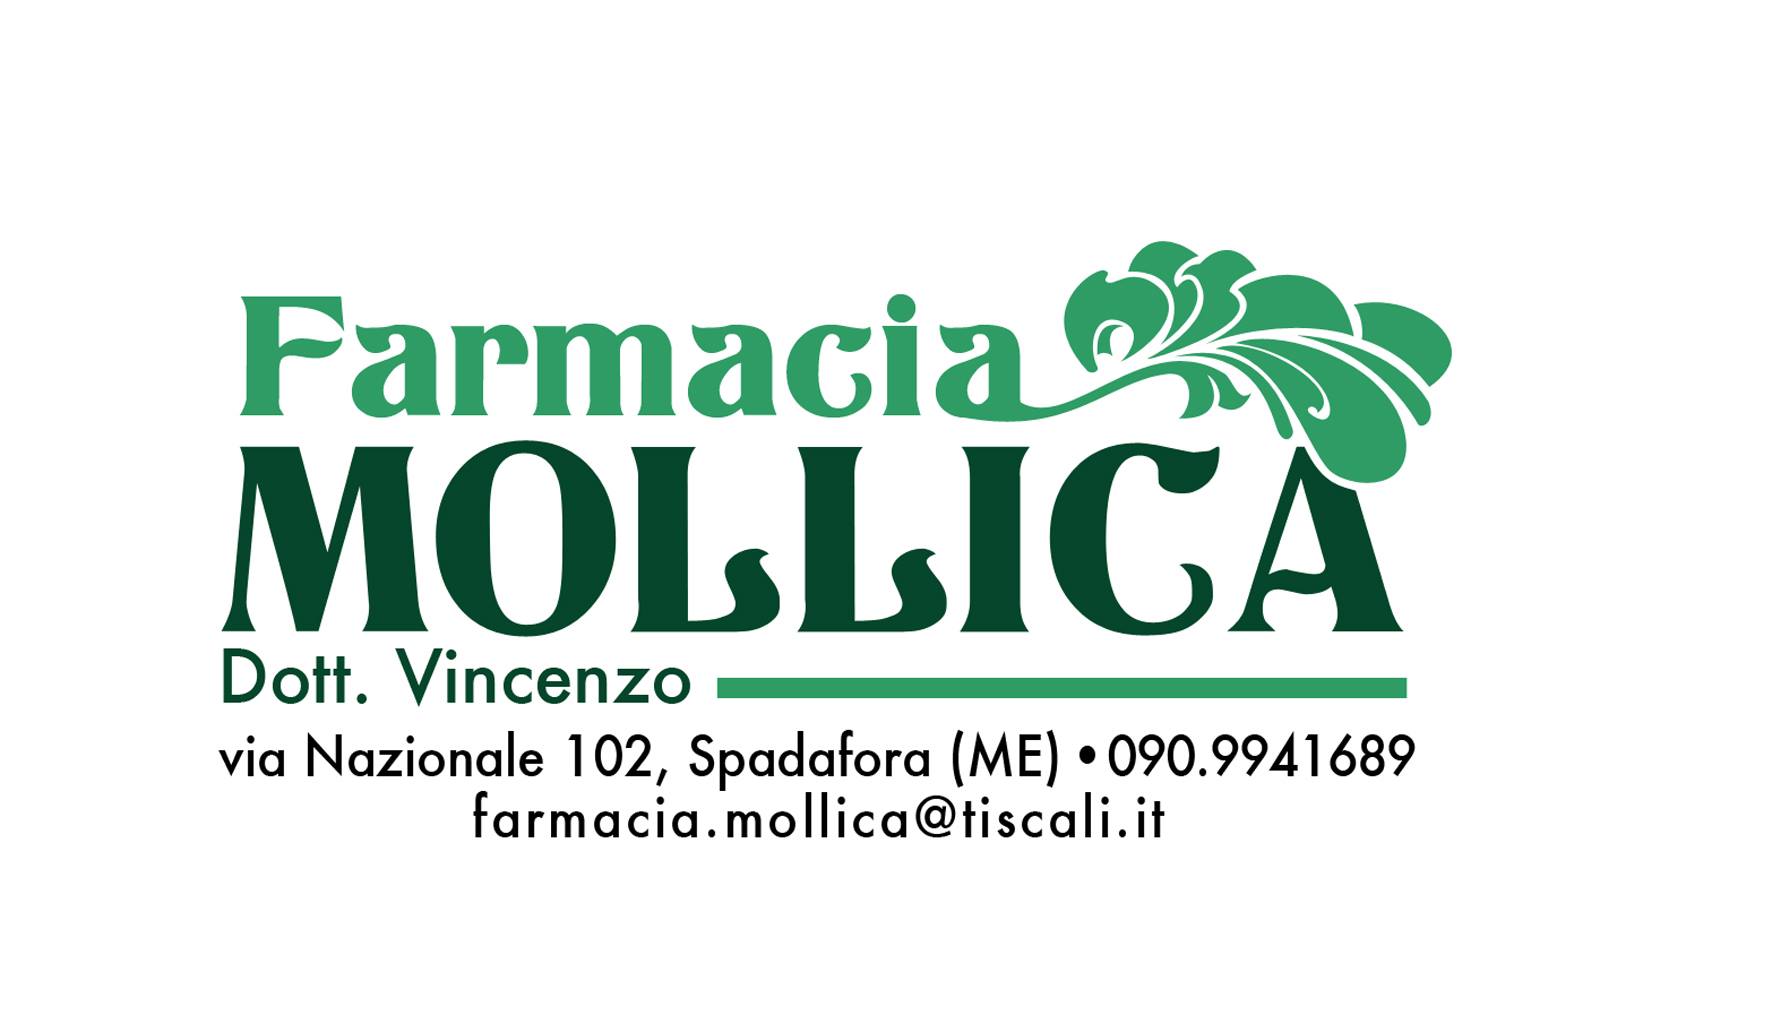 Farmacia Mollica image